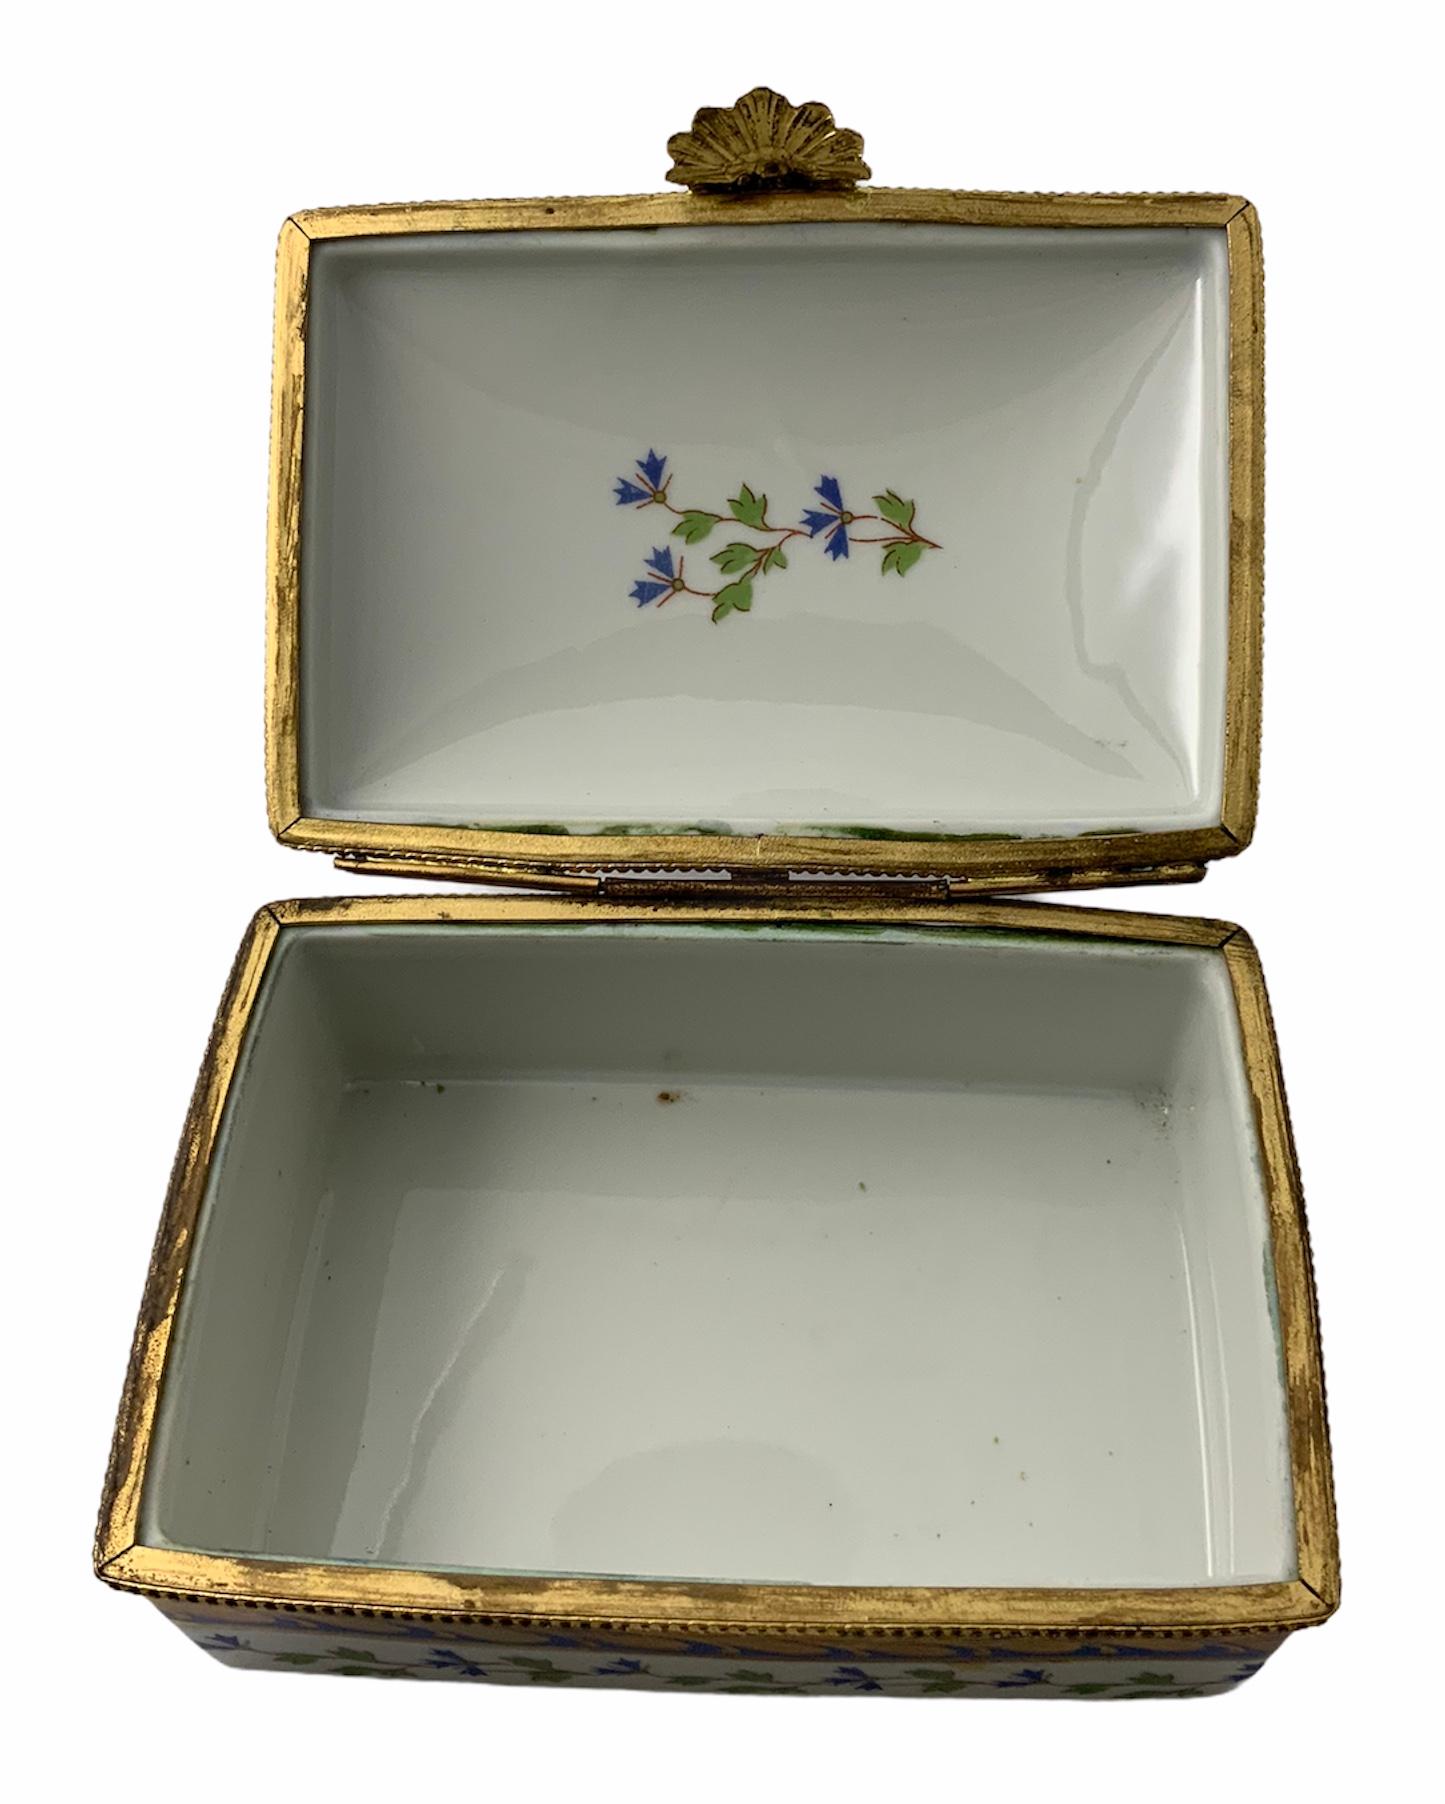 French Limoges Gilt Porcelain Rectangular Box